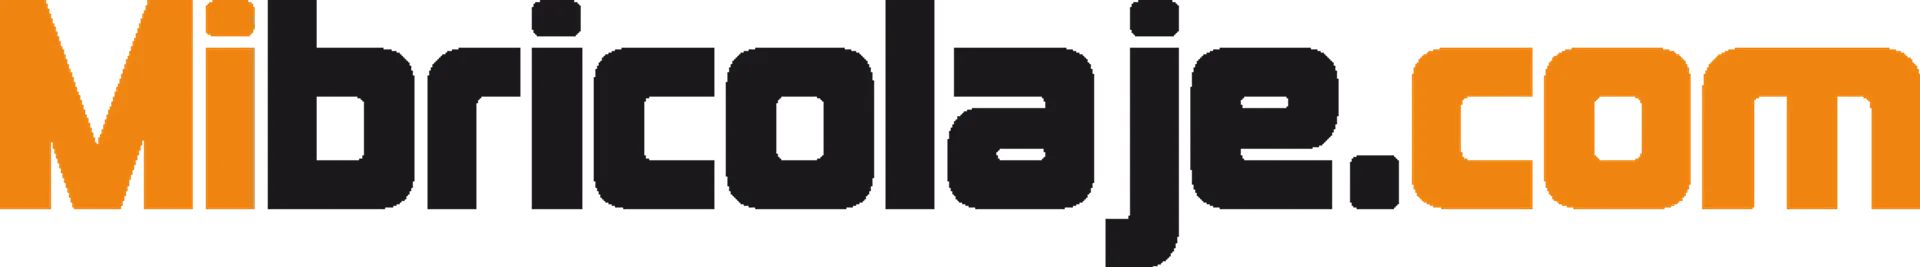 MIBROCOLAJE.COM logo de catálogo